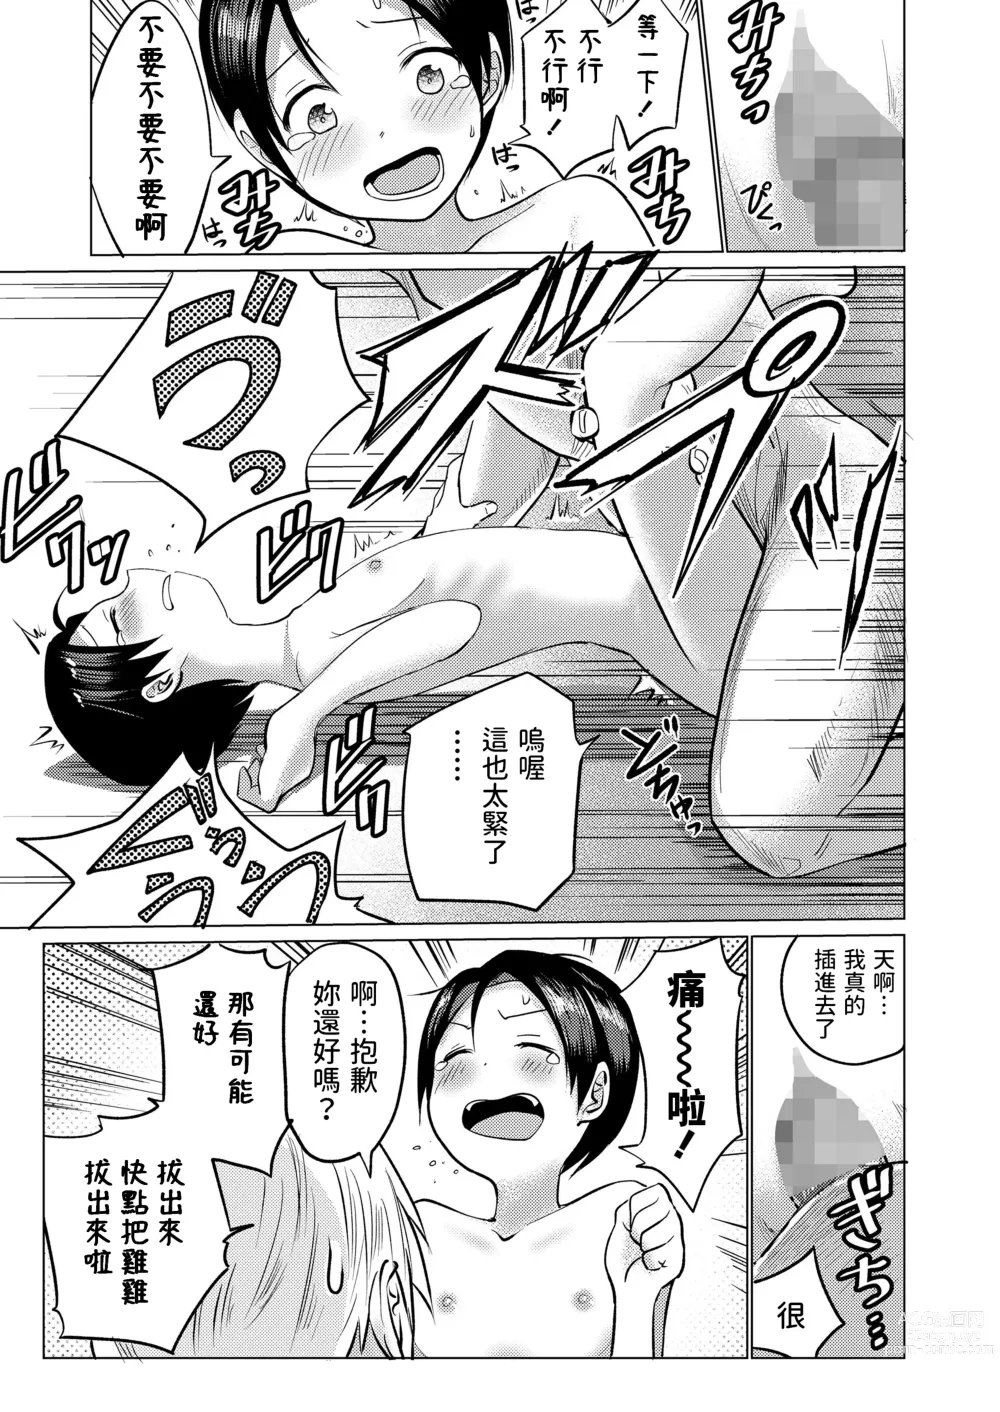 Page 13 of manga Hat Trick